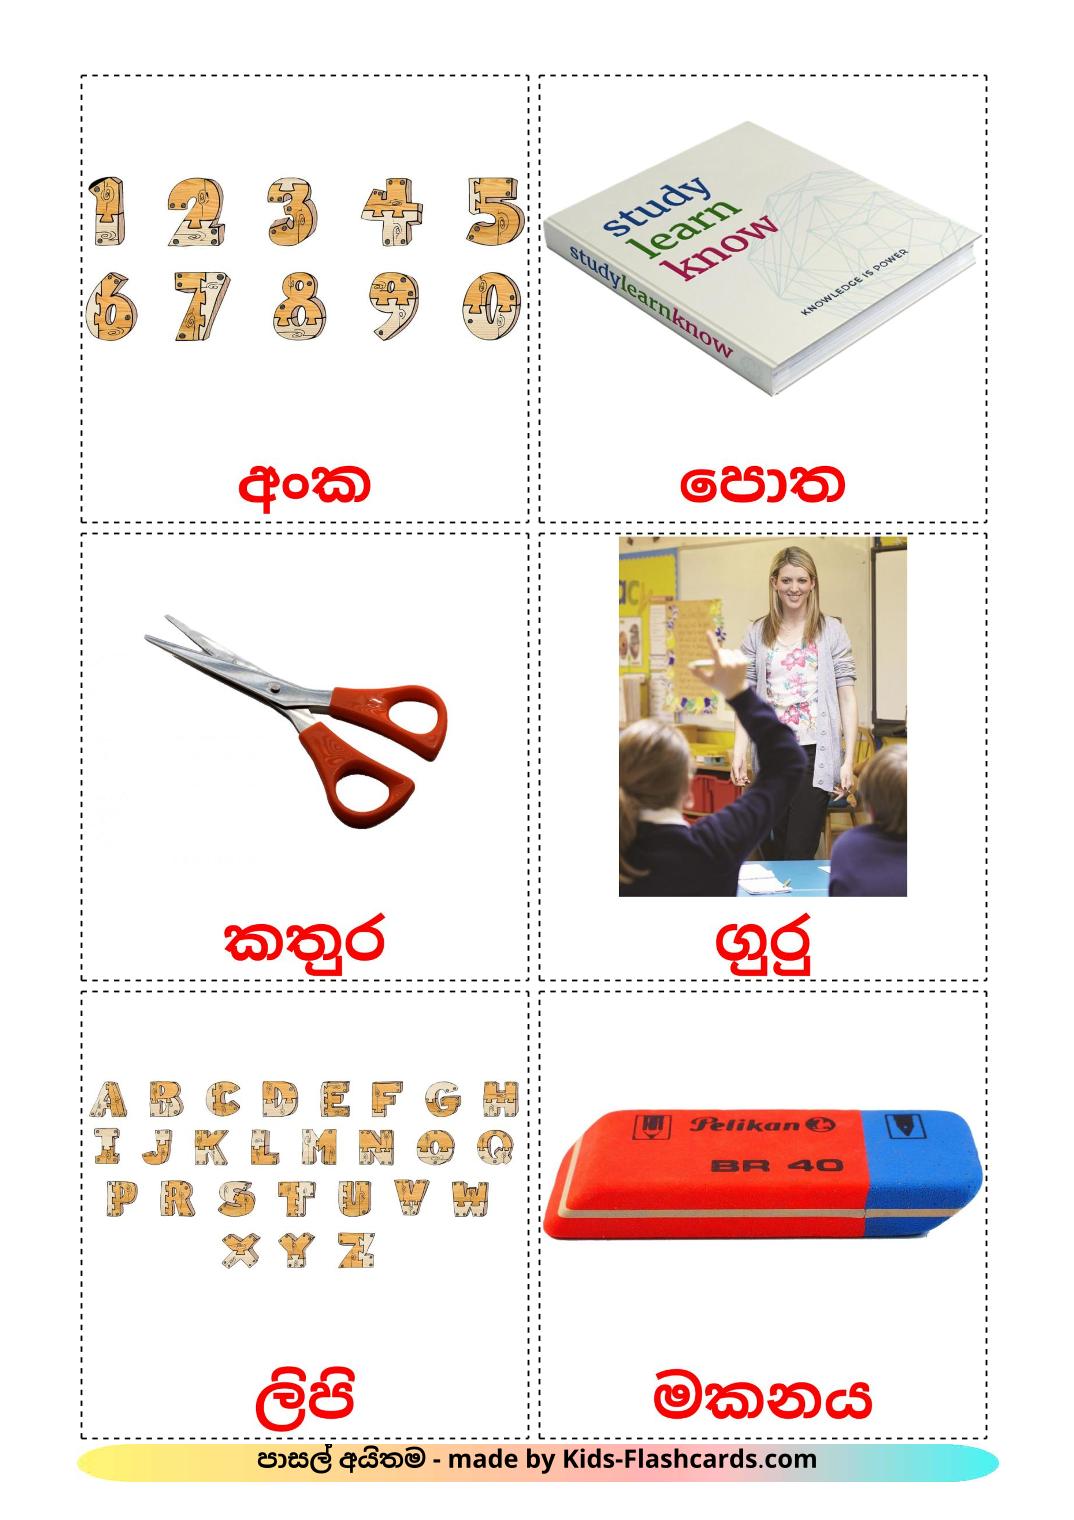 Objetos de sala de aula - 36 Flashcards sinhalaes gratuitos para impressão